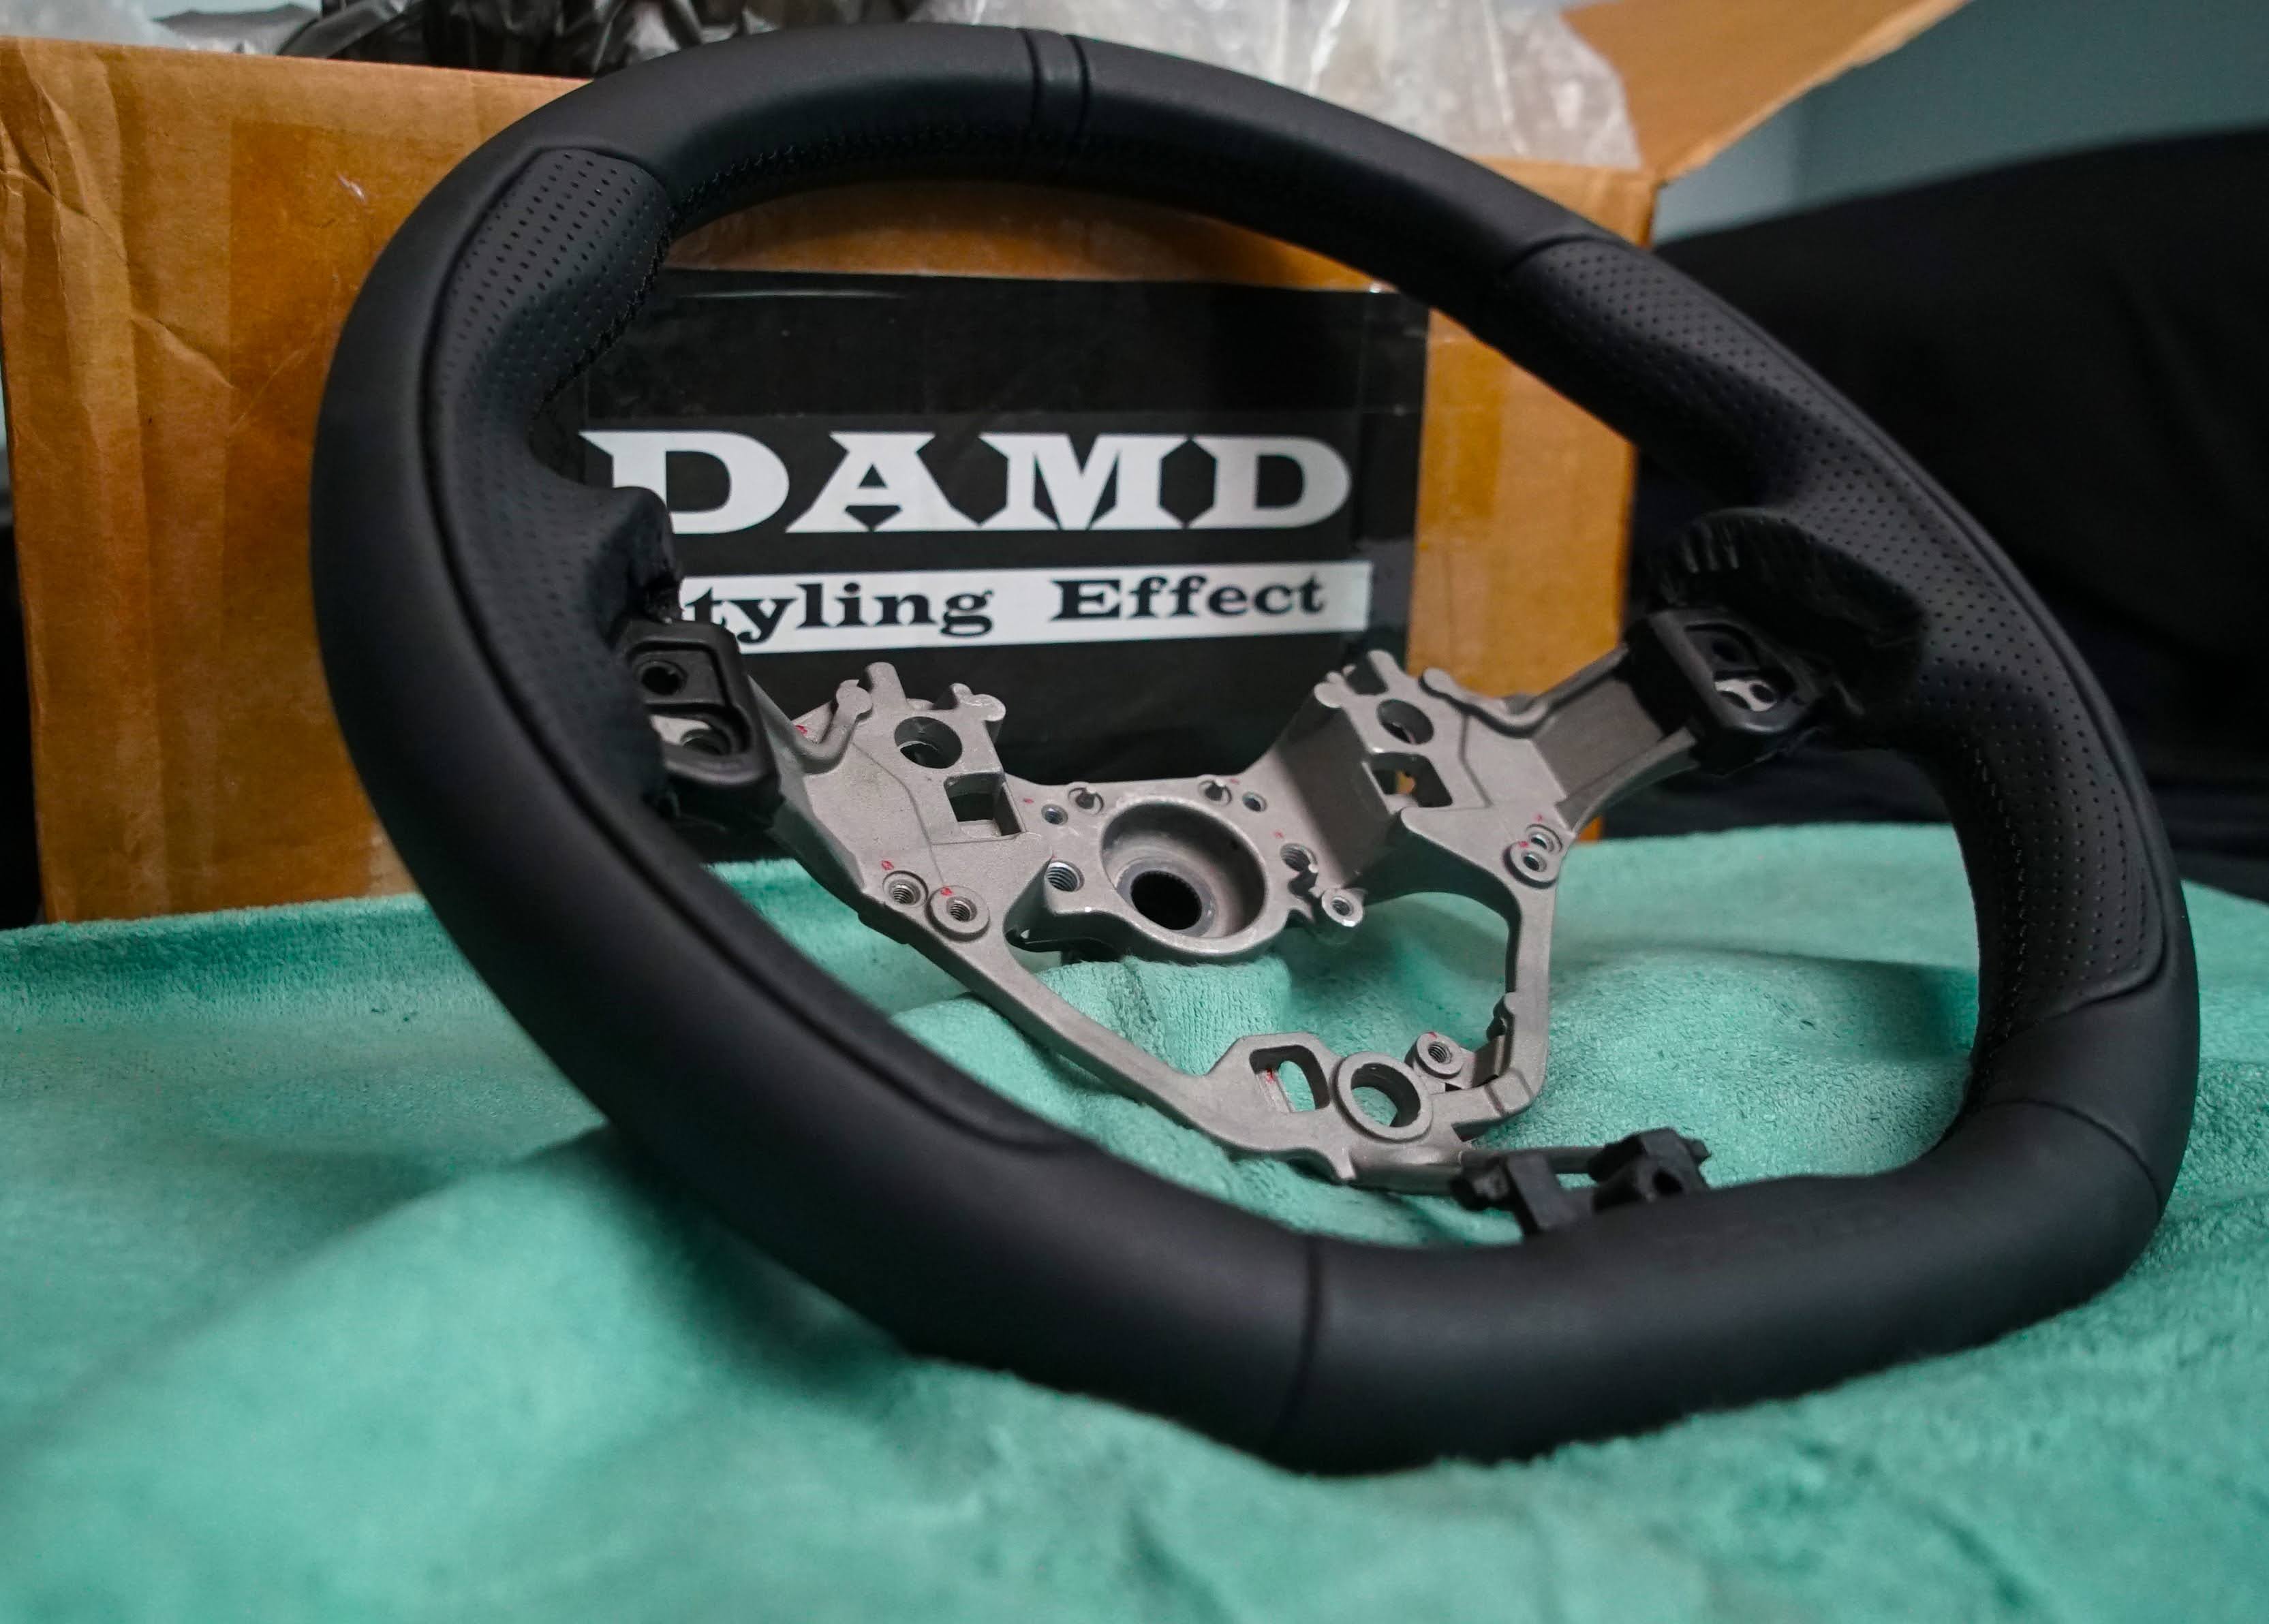 DAMD 2019+ GR86/ BRZ/ 86 D-Shape Steering Wheel Black w. Black Stitch